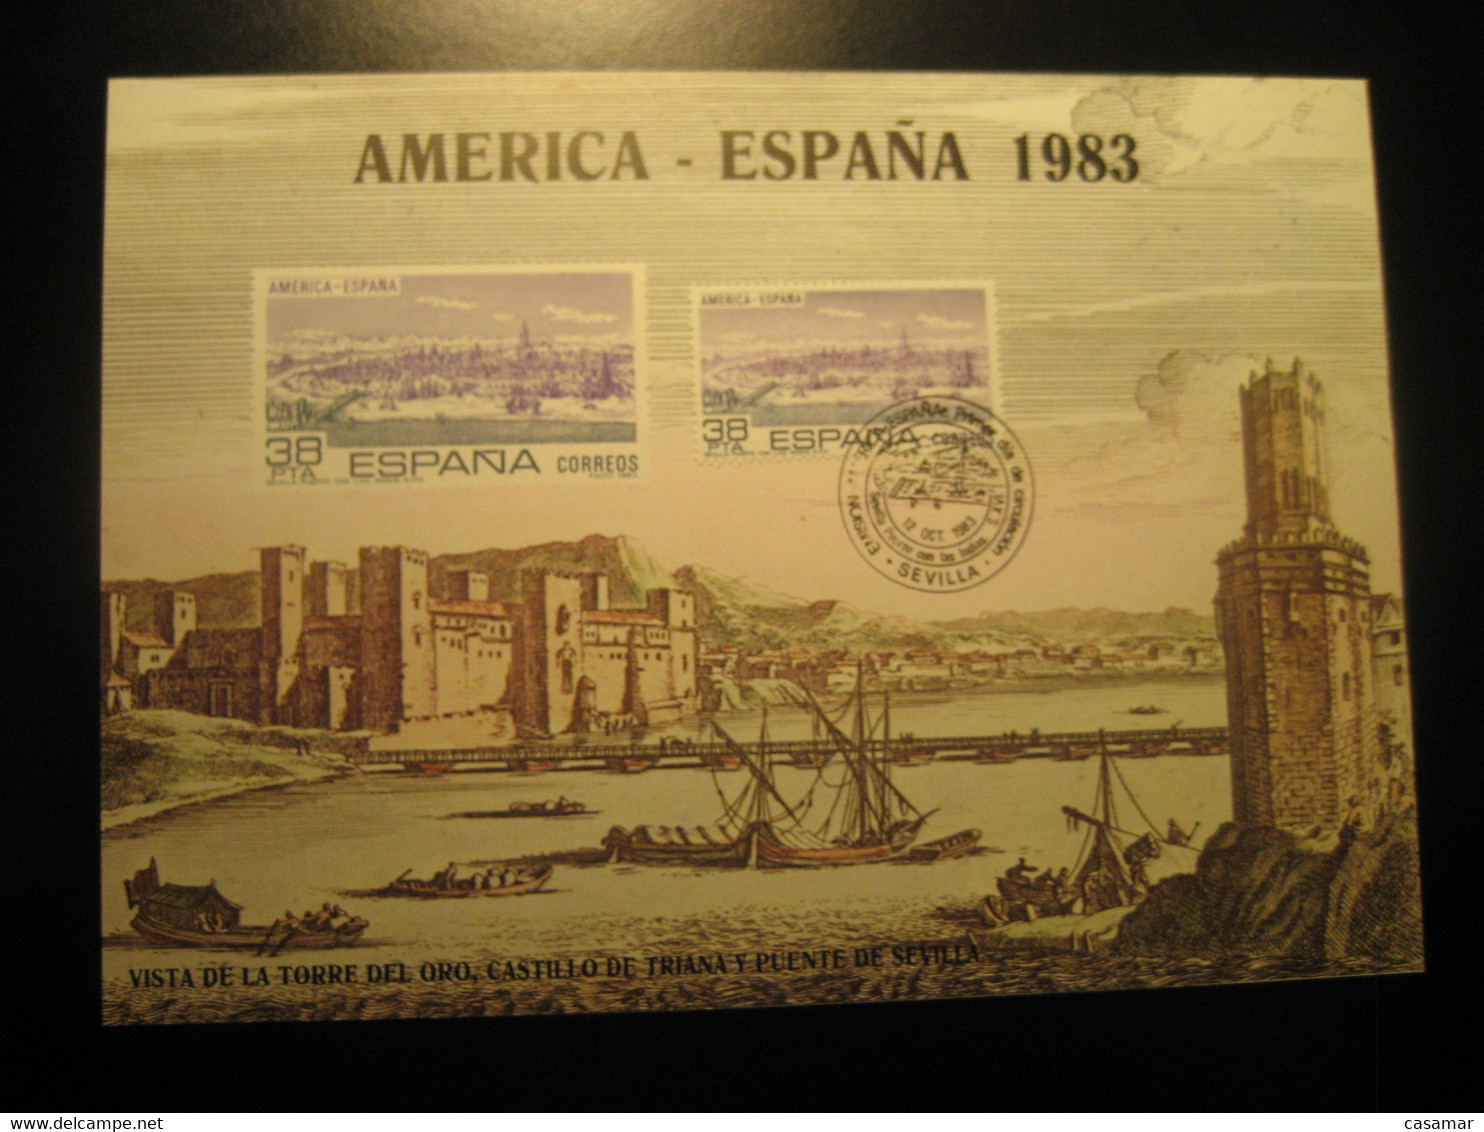 SEVILLA 1983 Puerto Con Las Indias Torre Del Oro Bridge Castle Cancel Big Card Proof SPAIN Document - Proofs & Reprints